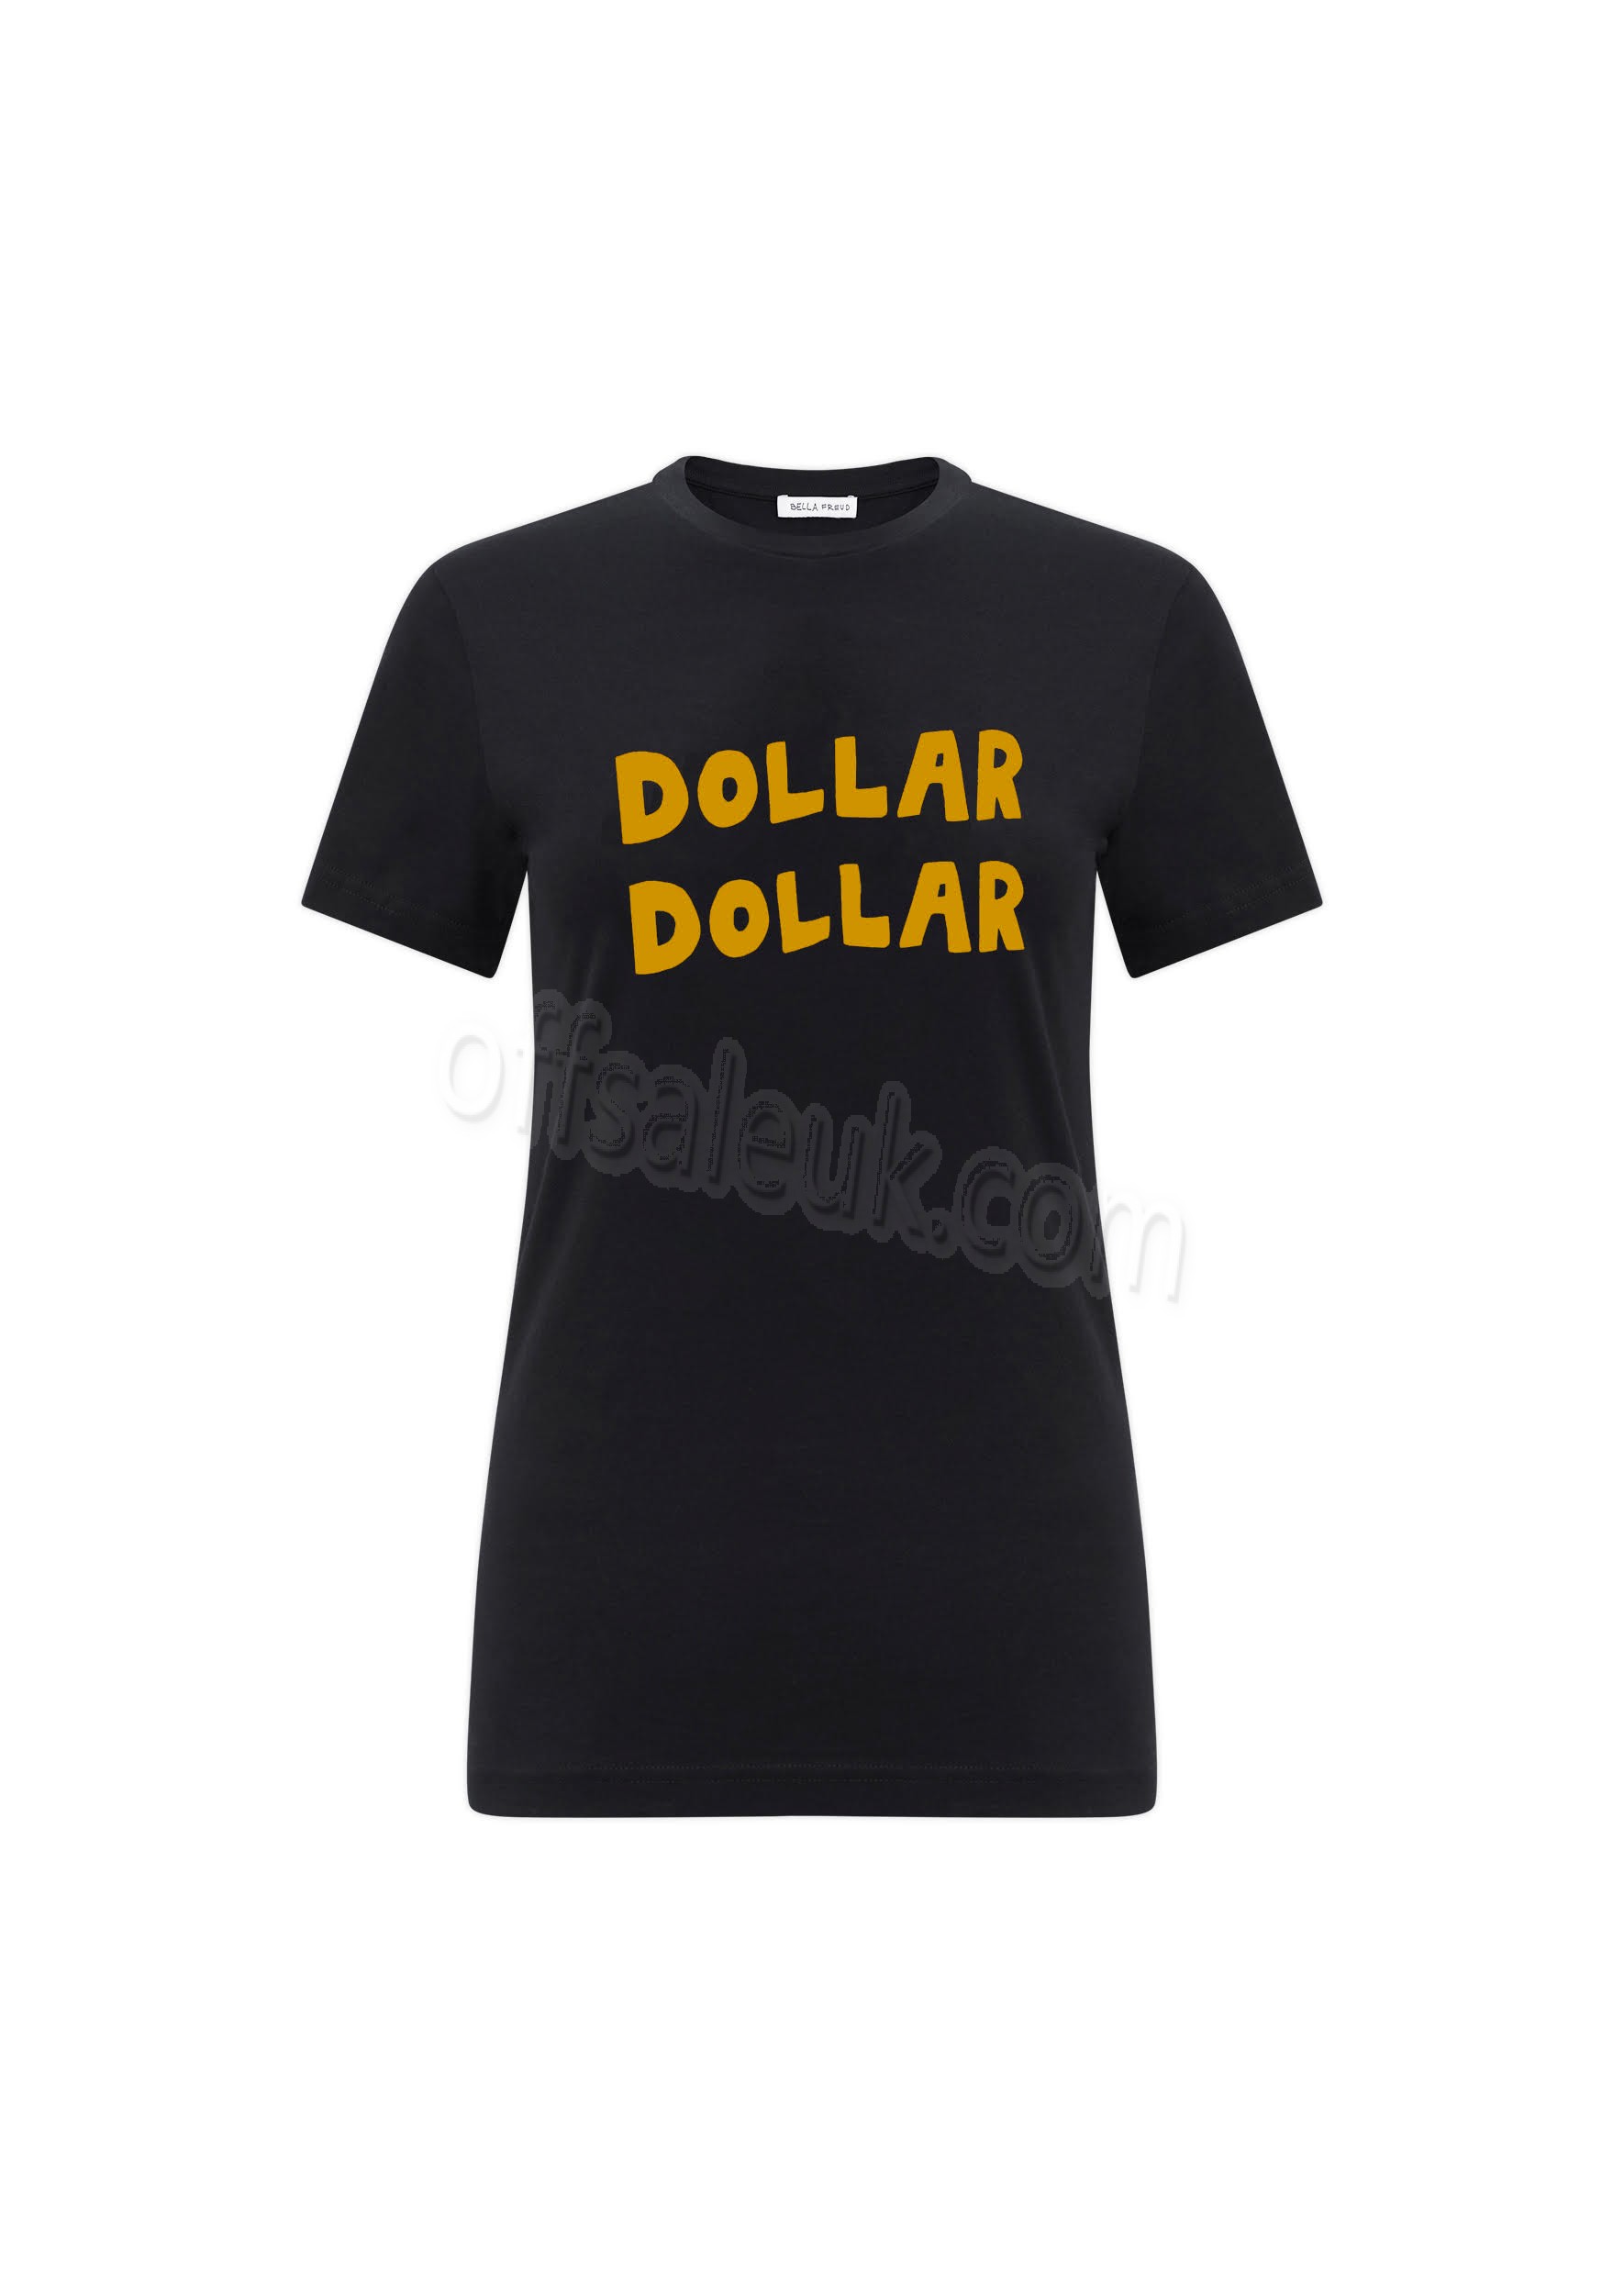 Bella Freud Dollar Dollar T-Shirt - Bella Freud Dollar Dollar T-Shirt